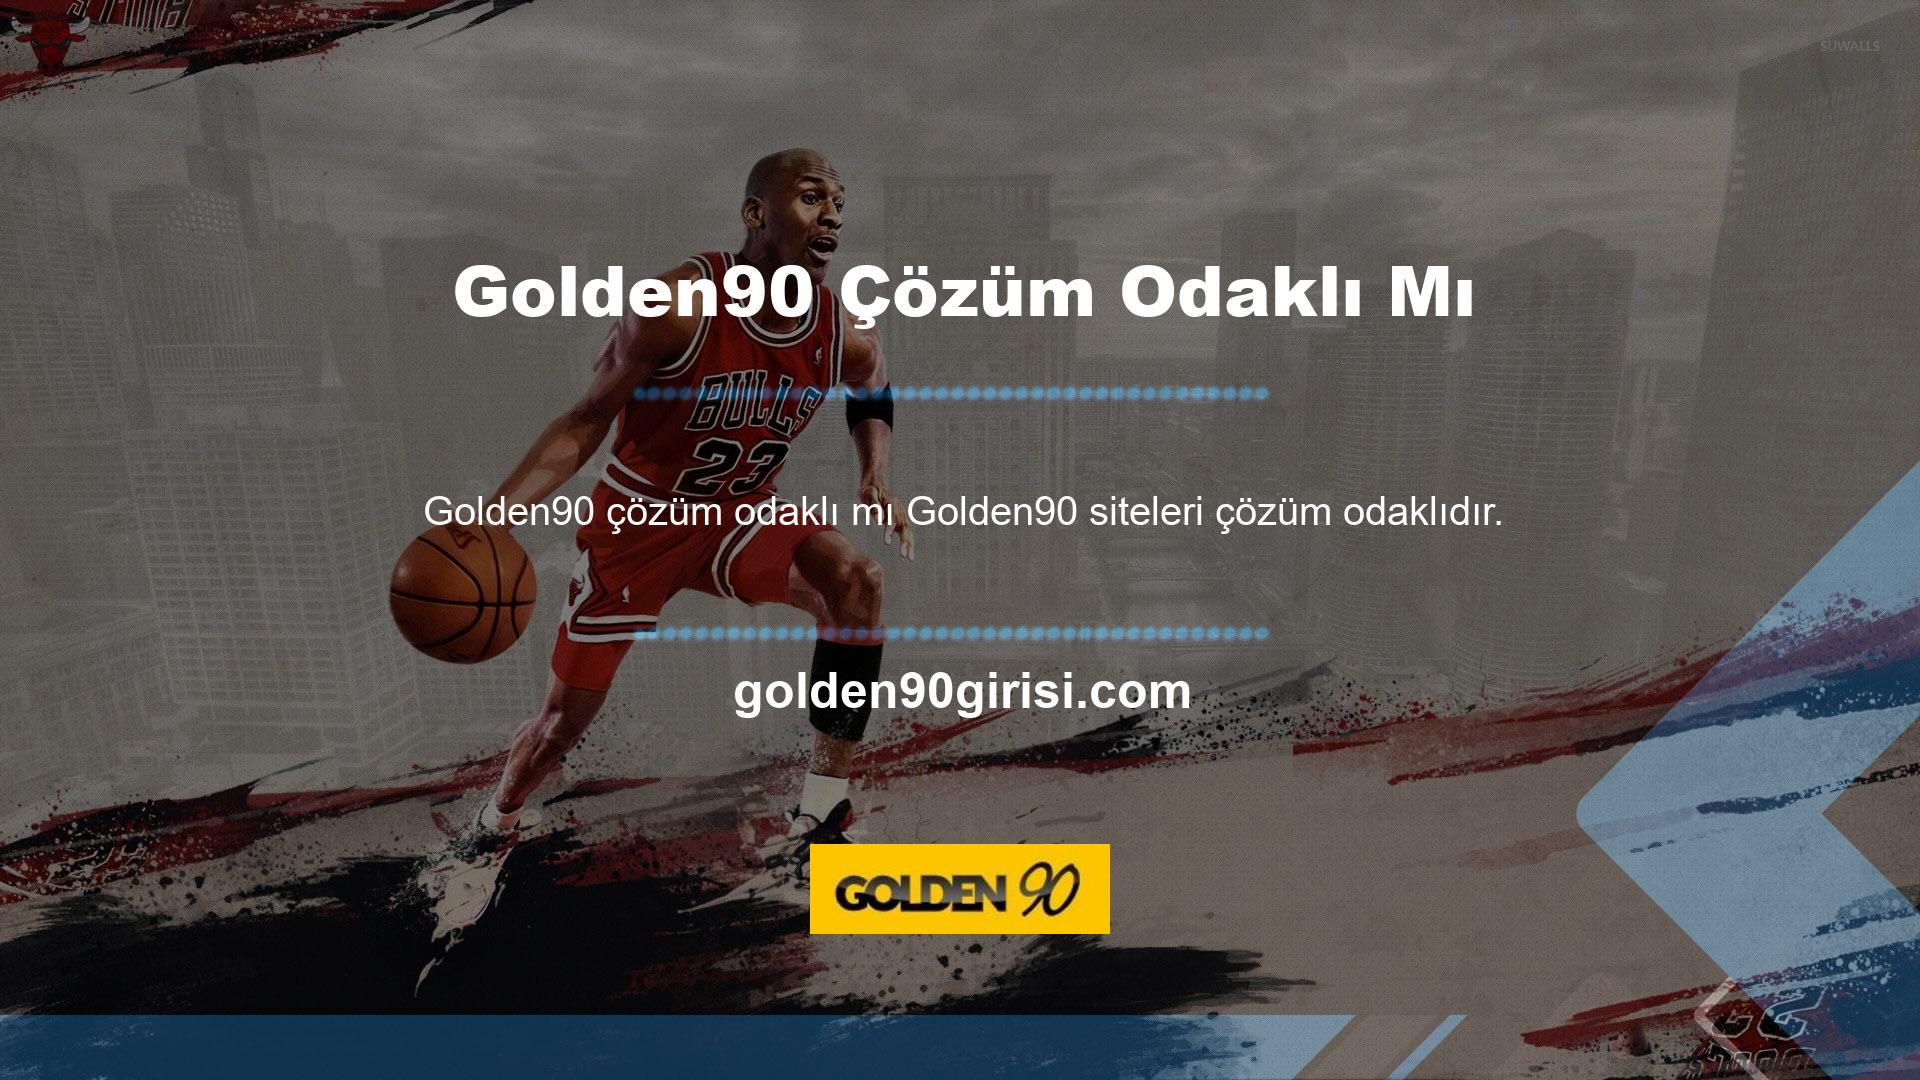 Golden90 sitesinin az sayıdaki özelliklerinden biri de çözüm odaklı bir yaklaşım benimsemesidir